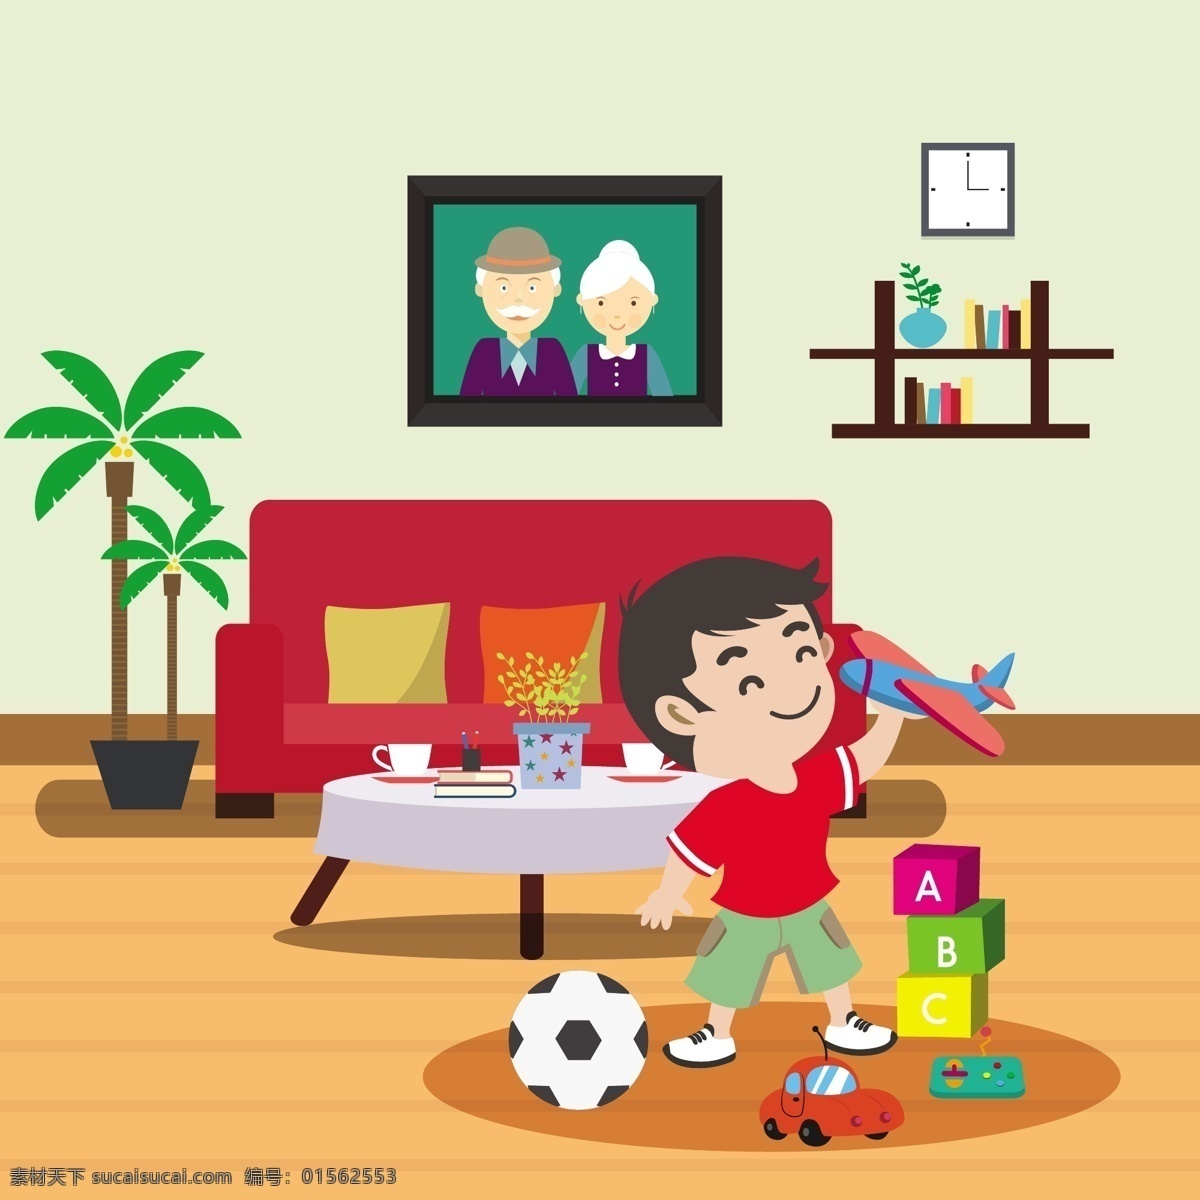 可爱 孩子 玩具 背景 图 广告背景 广告 背景素材 素材免费下载 飞机 桌子 沙发 足球